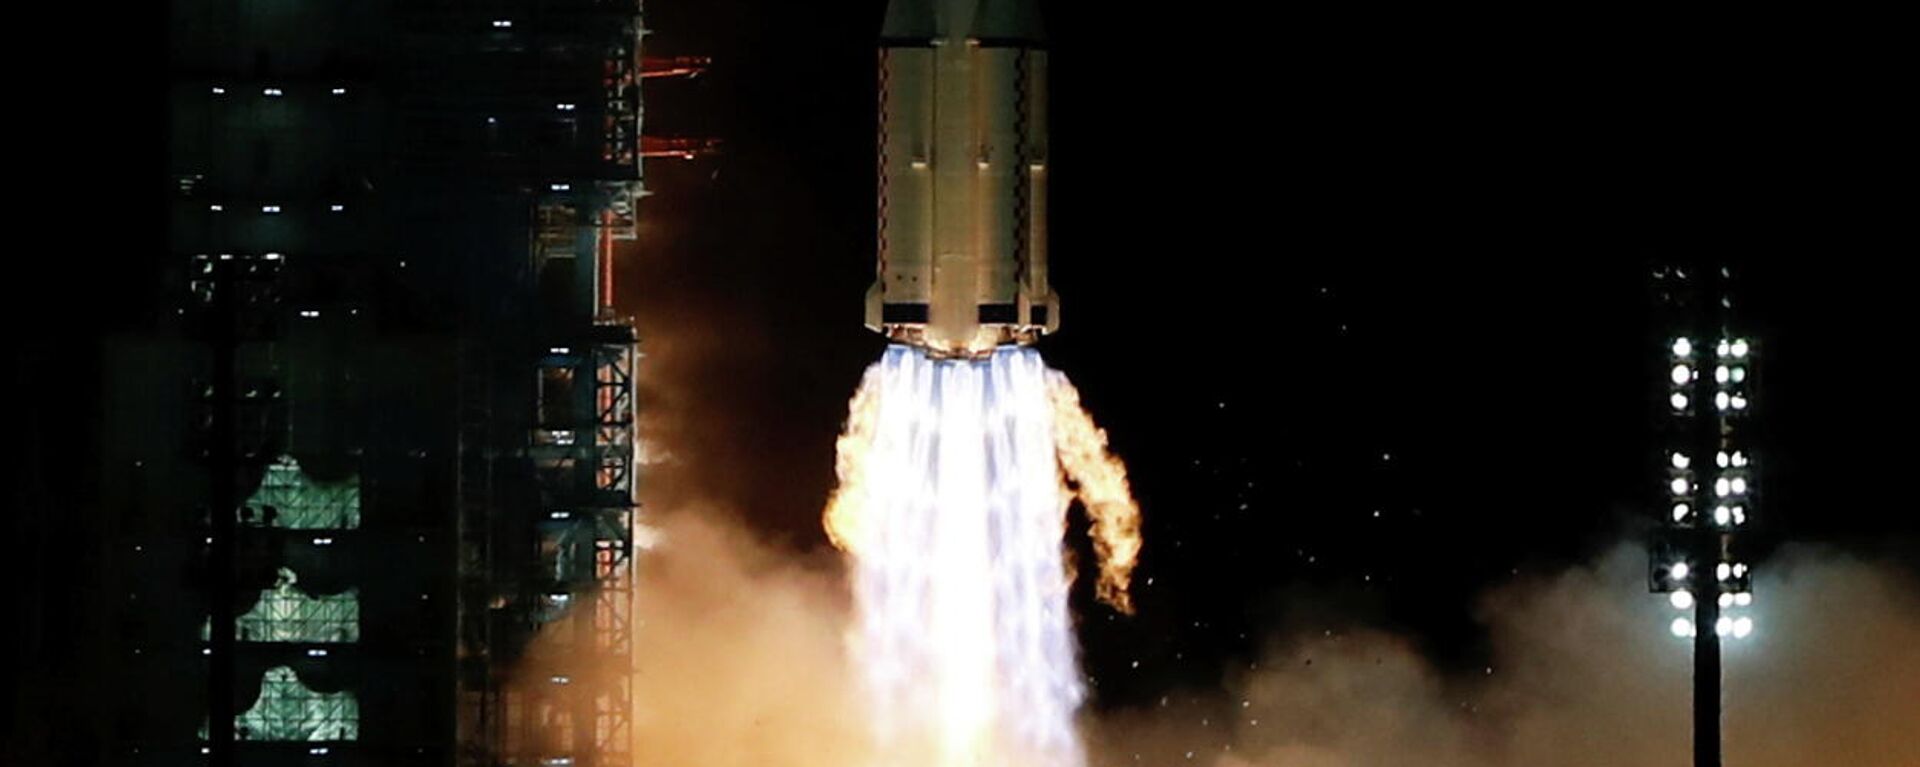 Lanzamiento de cohete portador Larga Marcha-2F que lleva a la órbita la nave espacial Shenzhou-13 - Sputnik Mundo, 1920, 15.10.2021